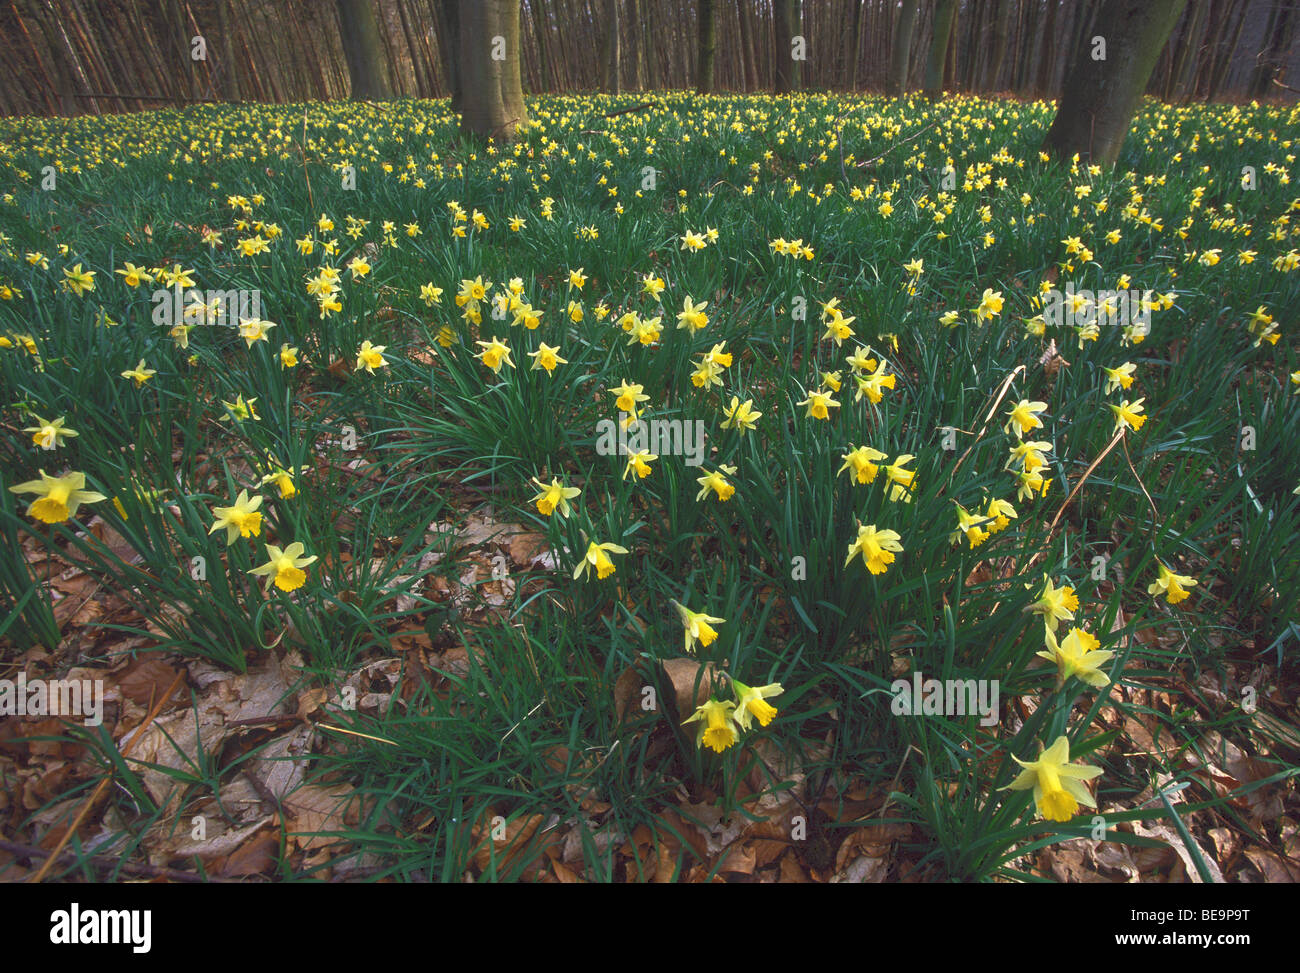 La floraison de la jonquille (Narcissus pseudonarcissus sauvages) en forêt, Belgique Banque D'Images